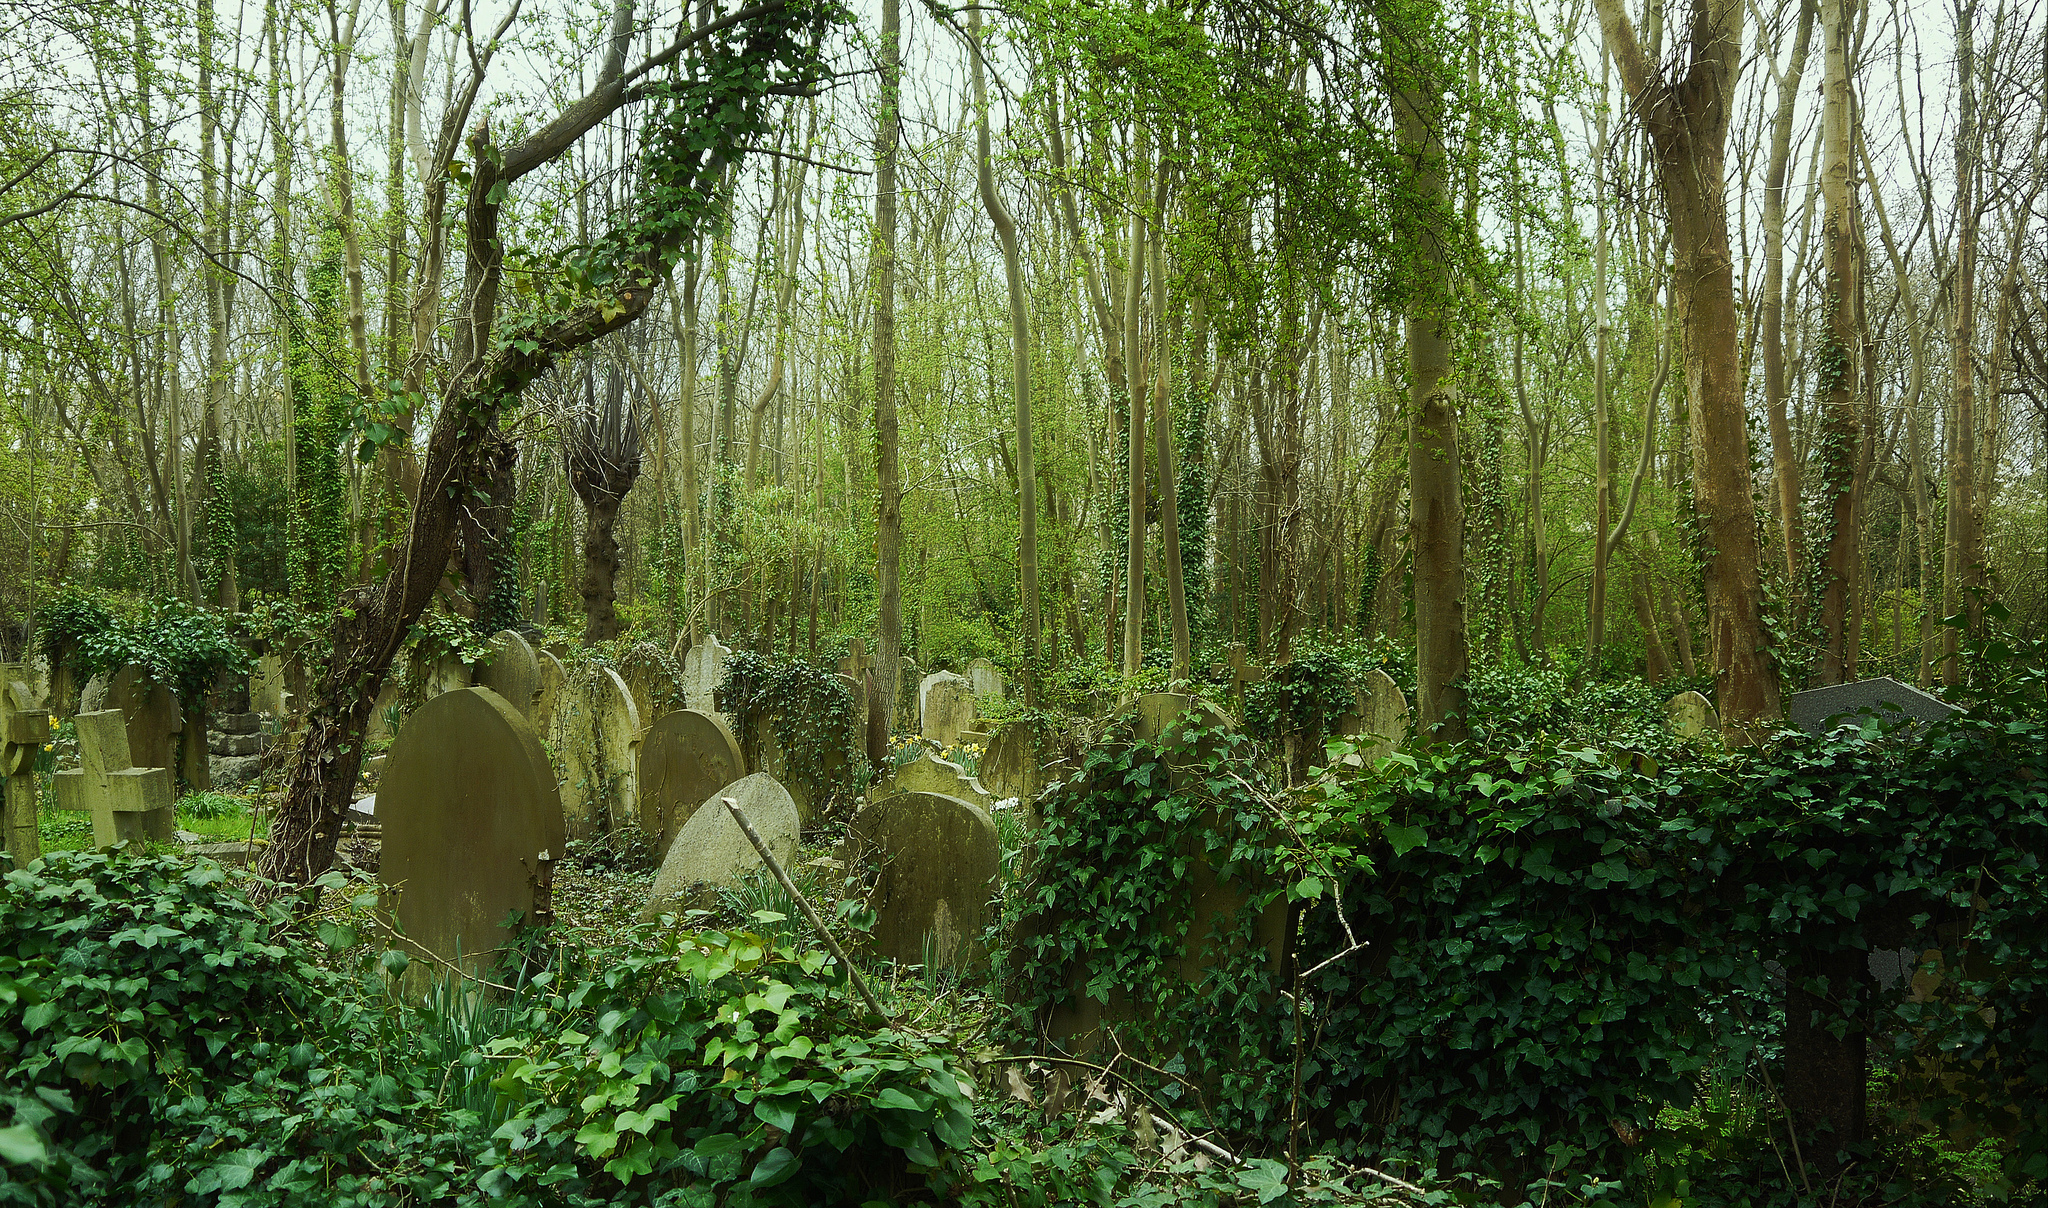 Кладбище в ясенево. Кладбище в джунглях. Заброшенное кладбище в лесу. Кладбище парк из деревьев Лондон. Кладбище в стиле модернизма.